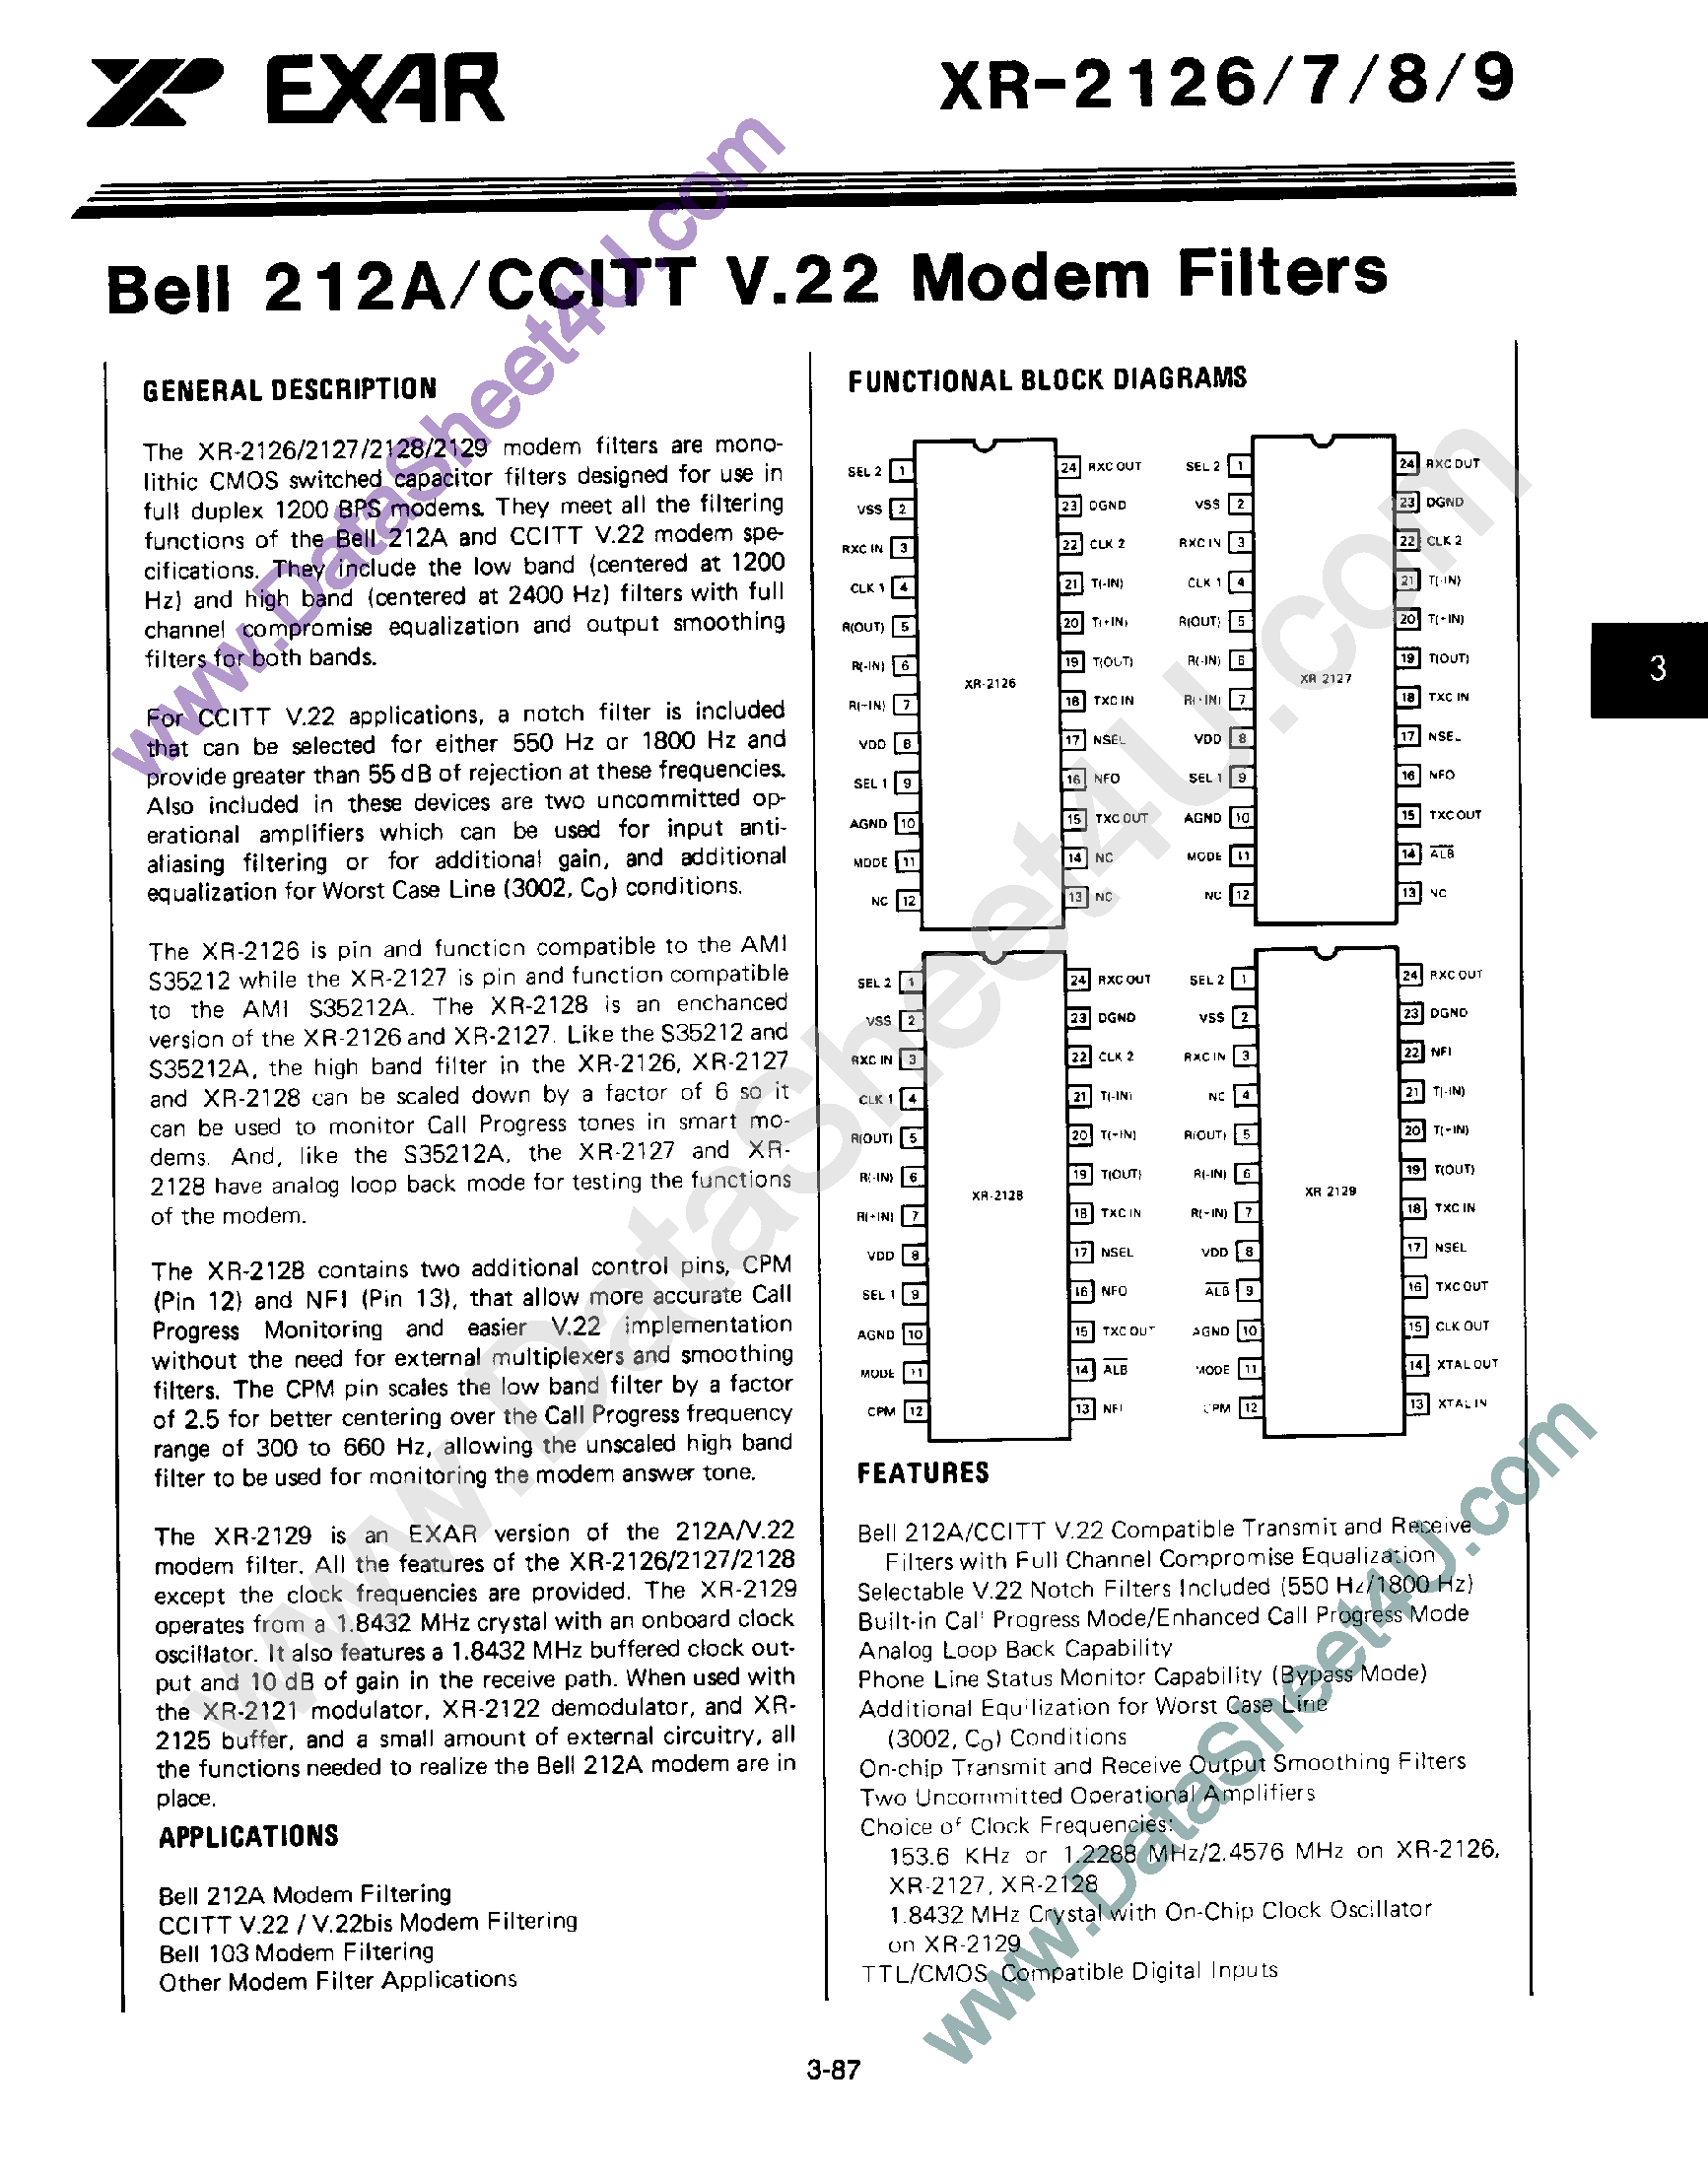 Datasheet XR2126 - Bell 212A / CCITT V.22 Modem Filters page 1